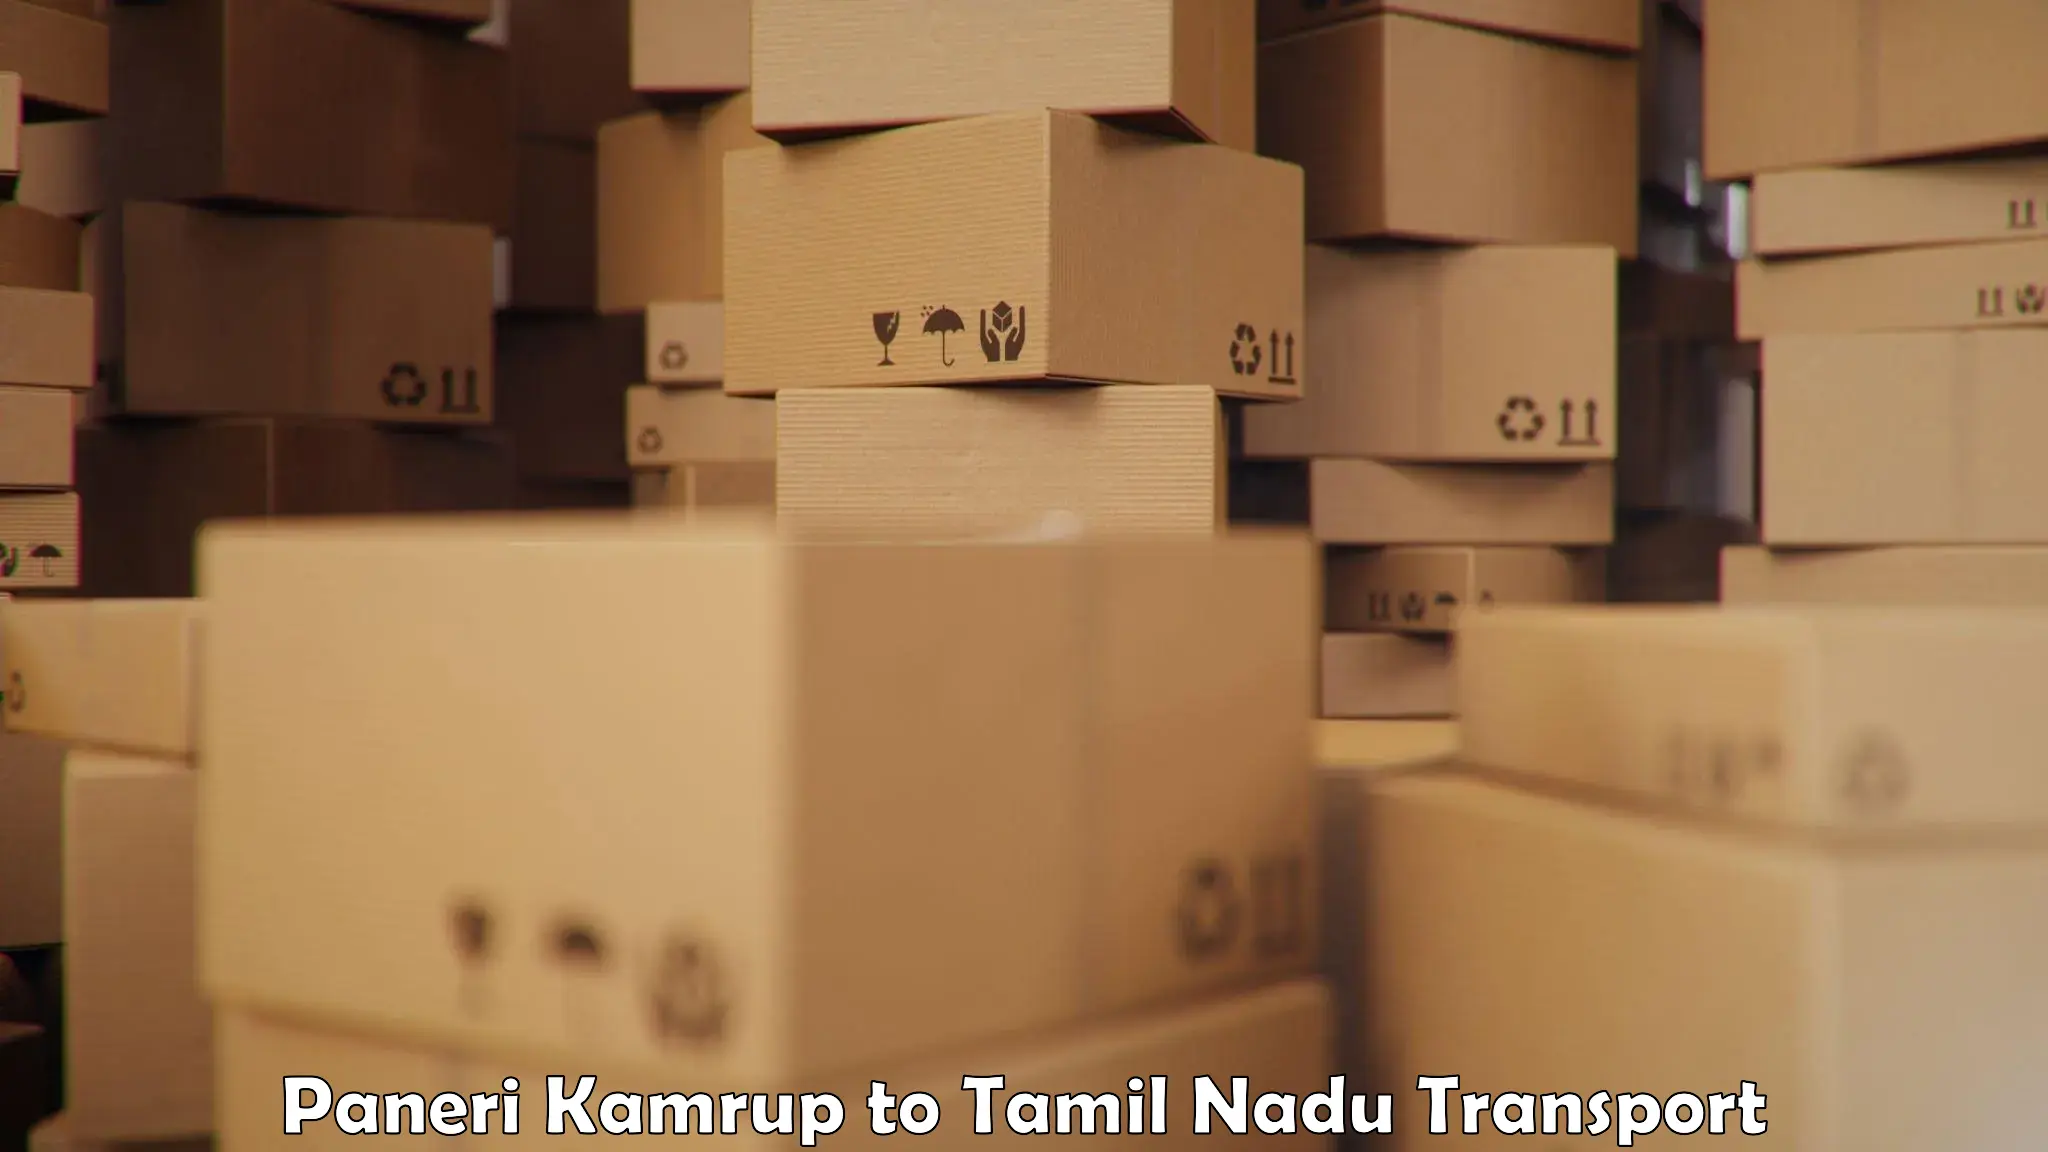 Express transport services Paneri Kamrup to Tirupur